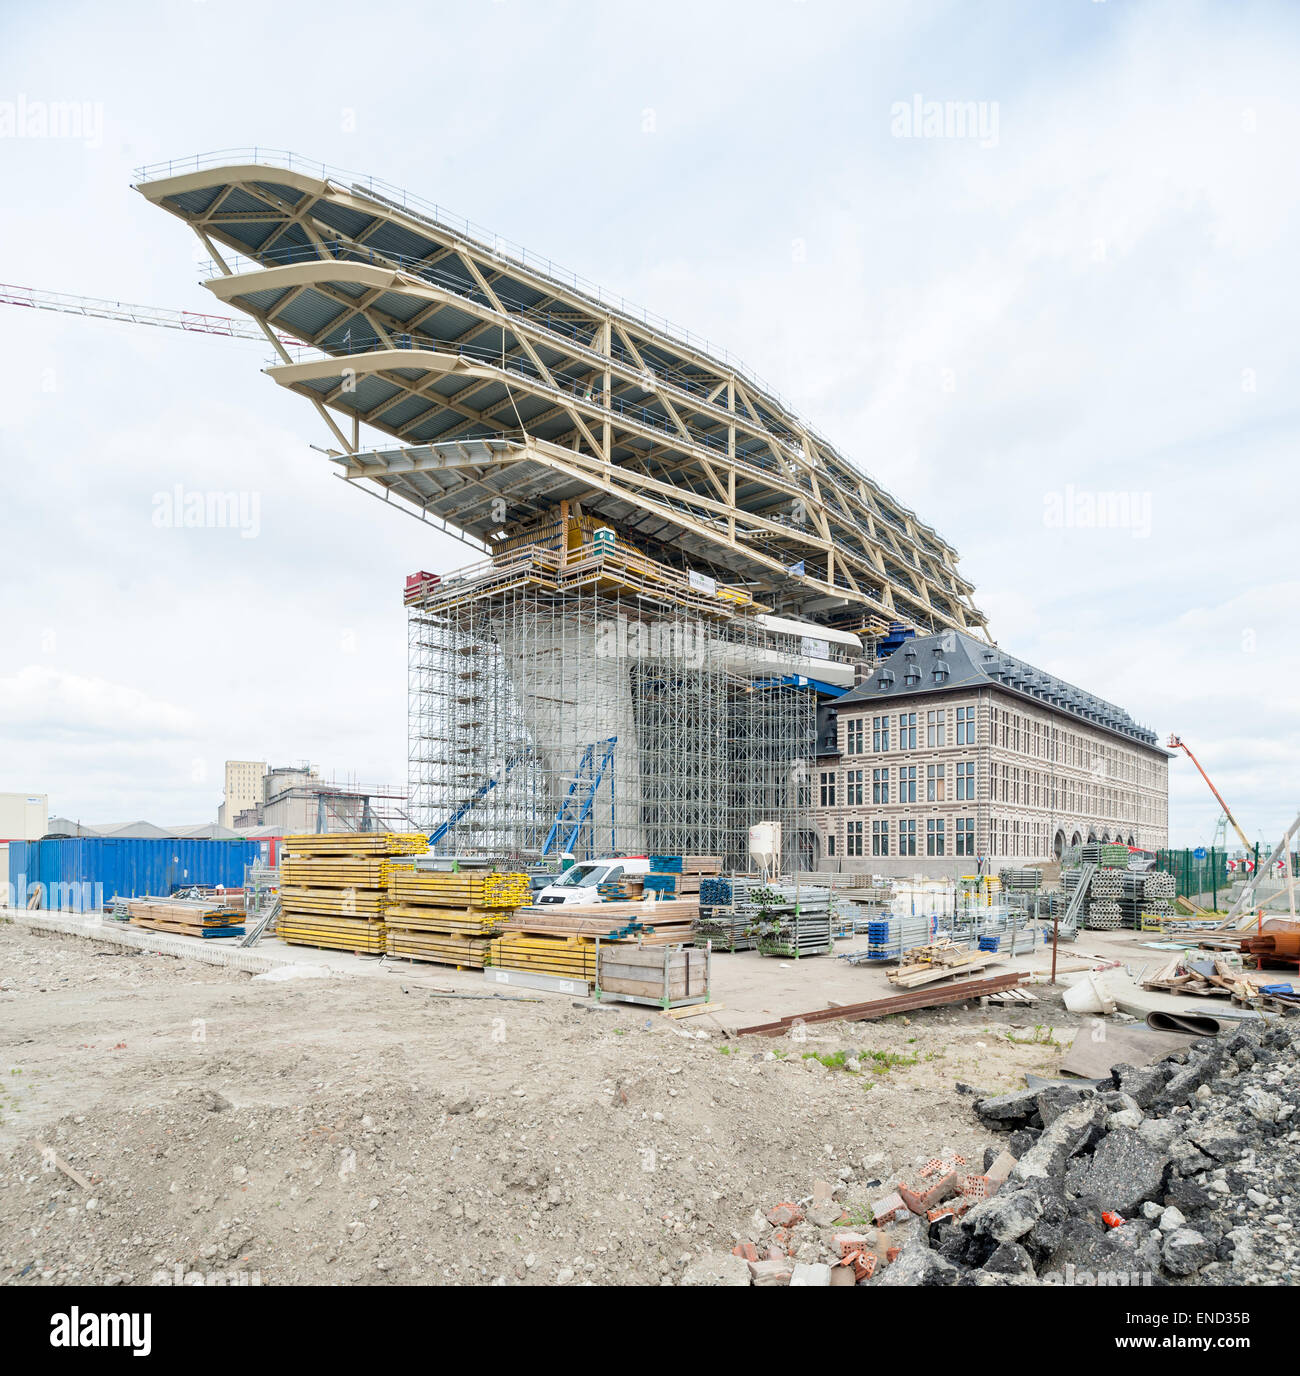 Belgium, Antwerp, Nieuw havenhuis designed by Zaha Hadid in construction Stock Photo